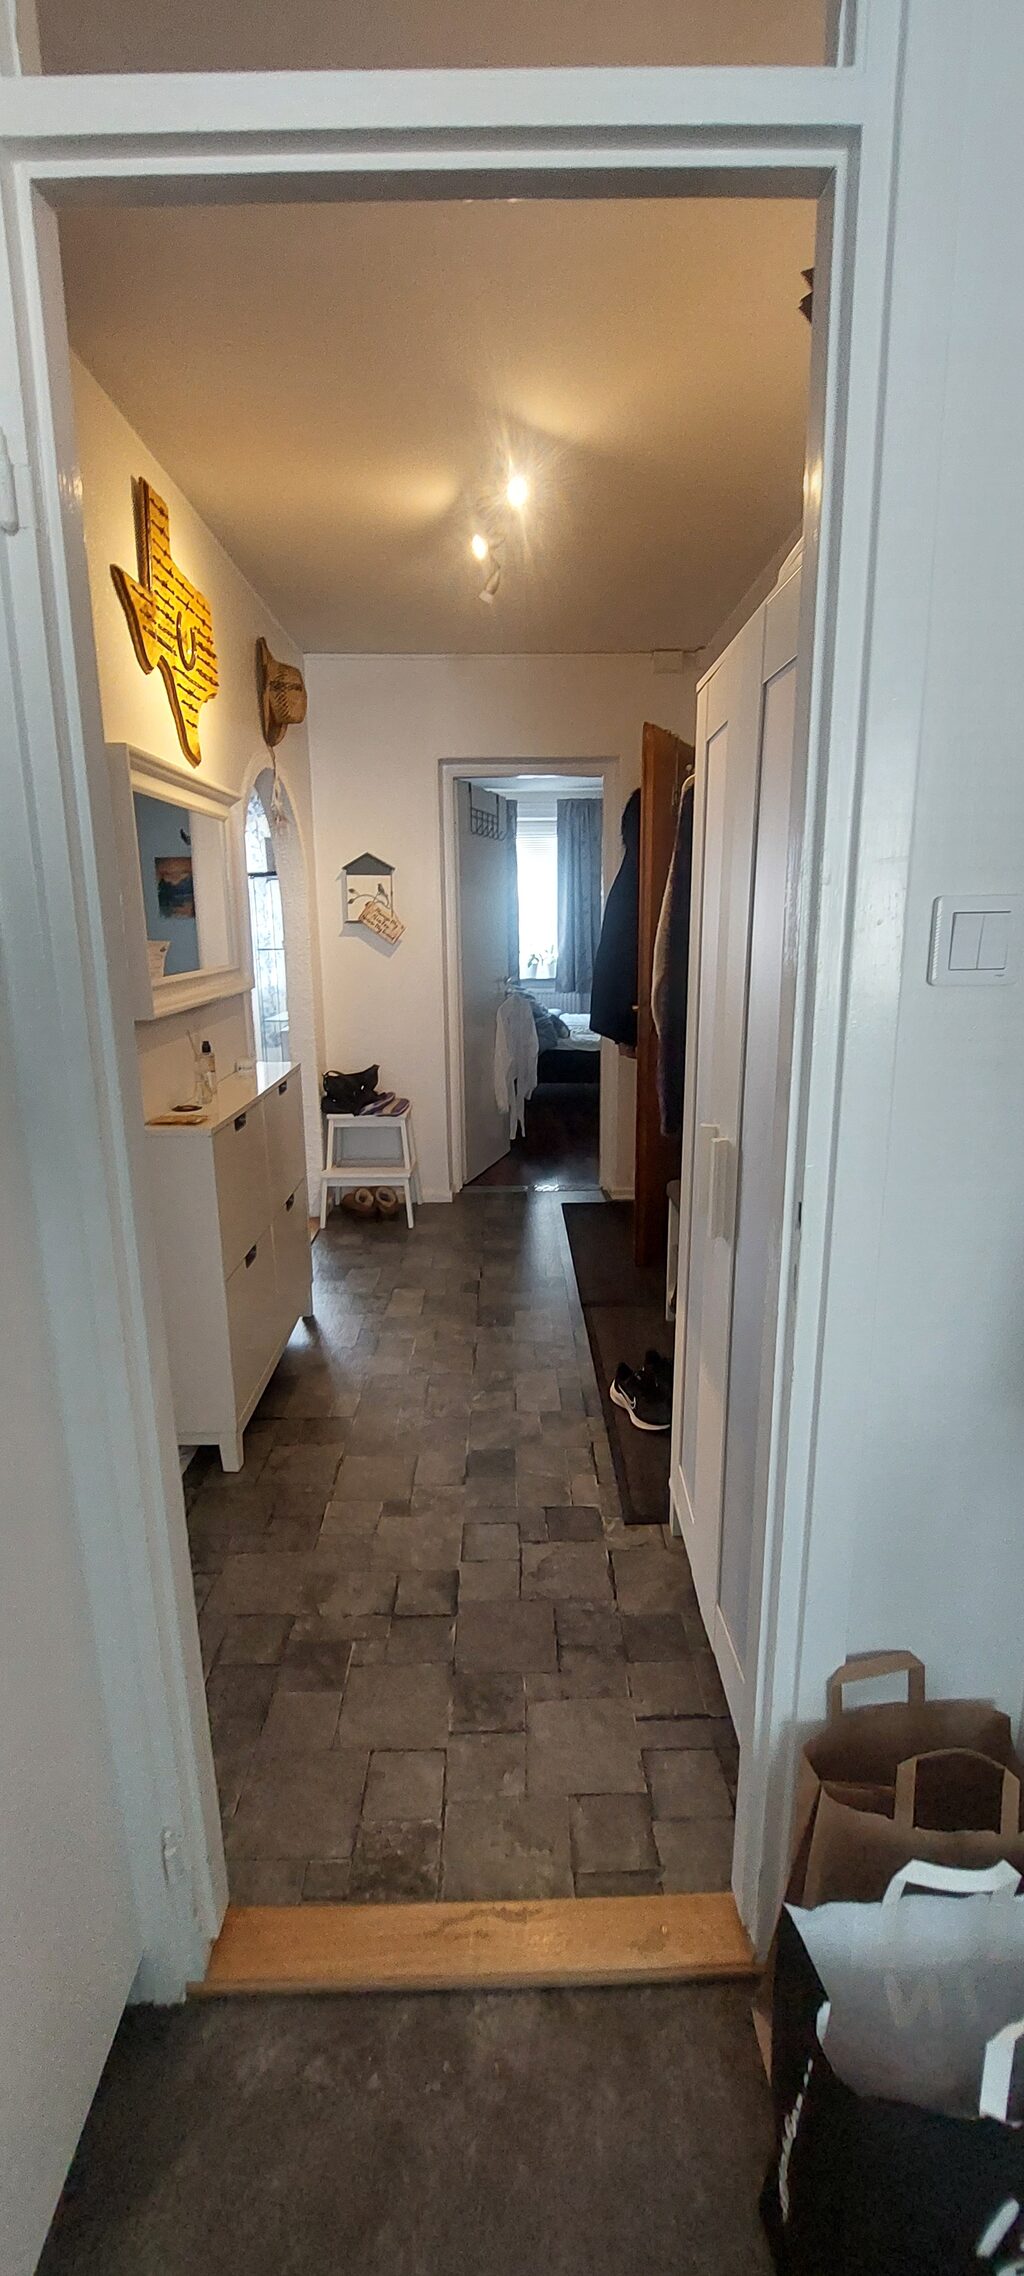 Lägenhetsbyte - Porlabacken, 124 77 Bandhagen